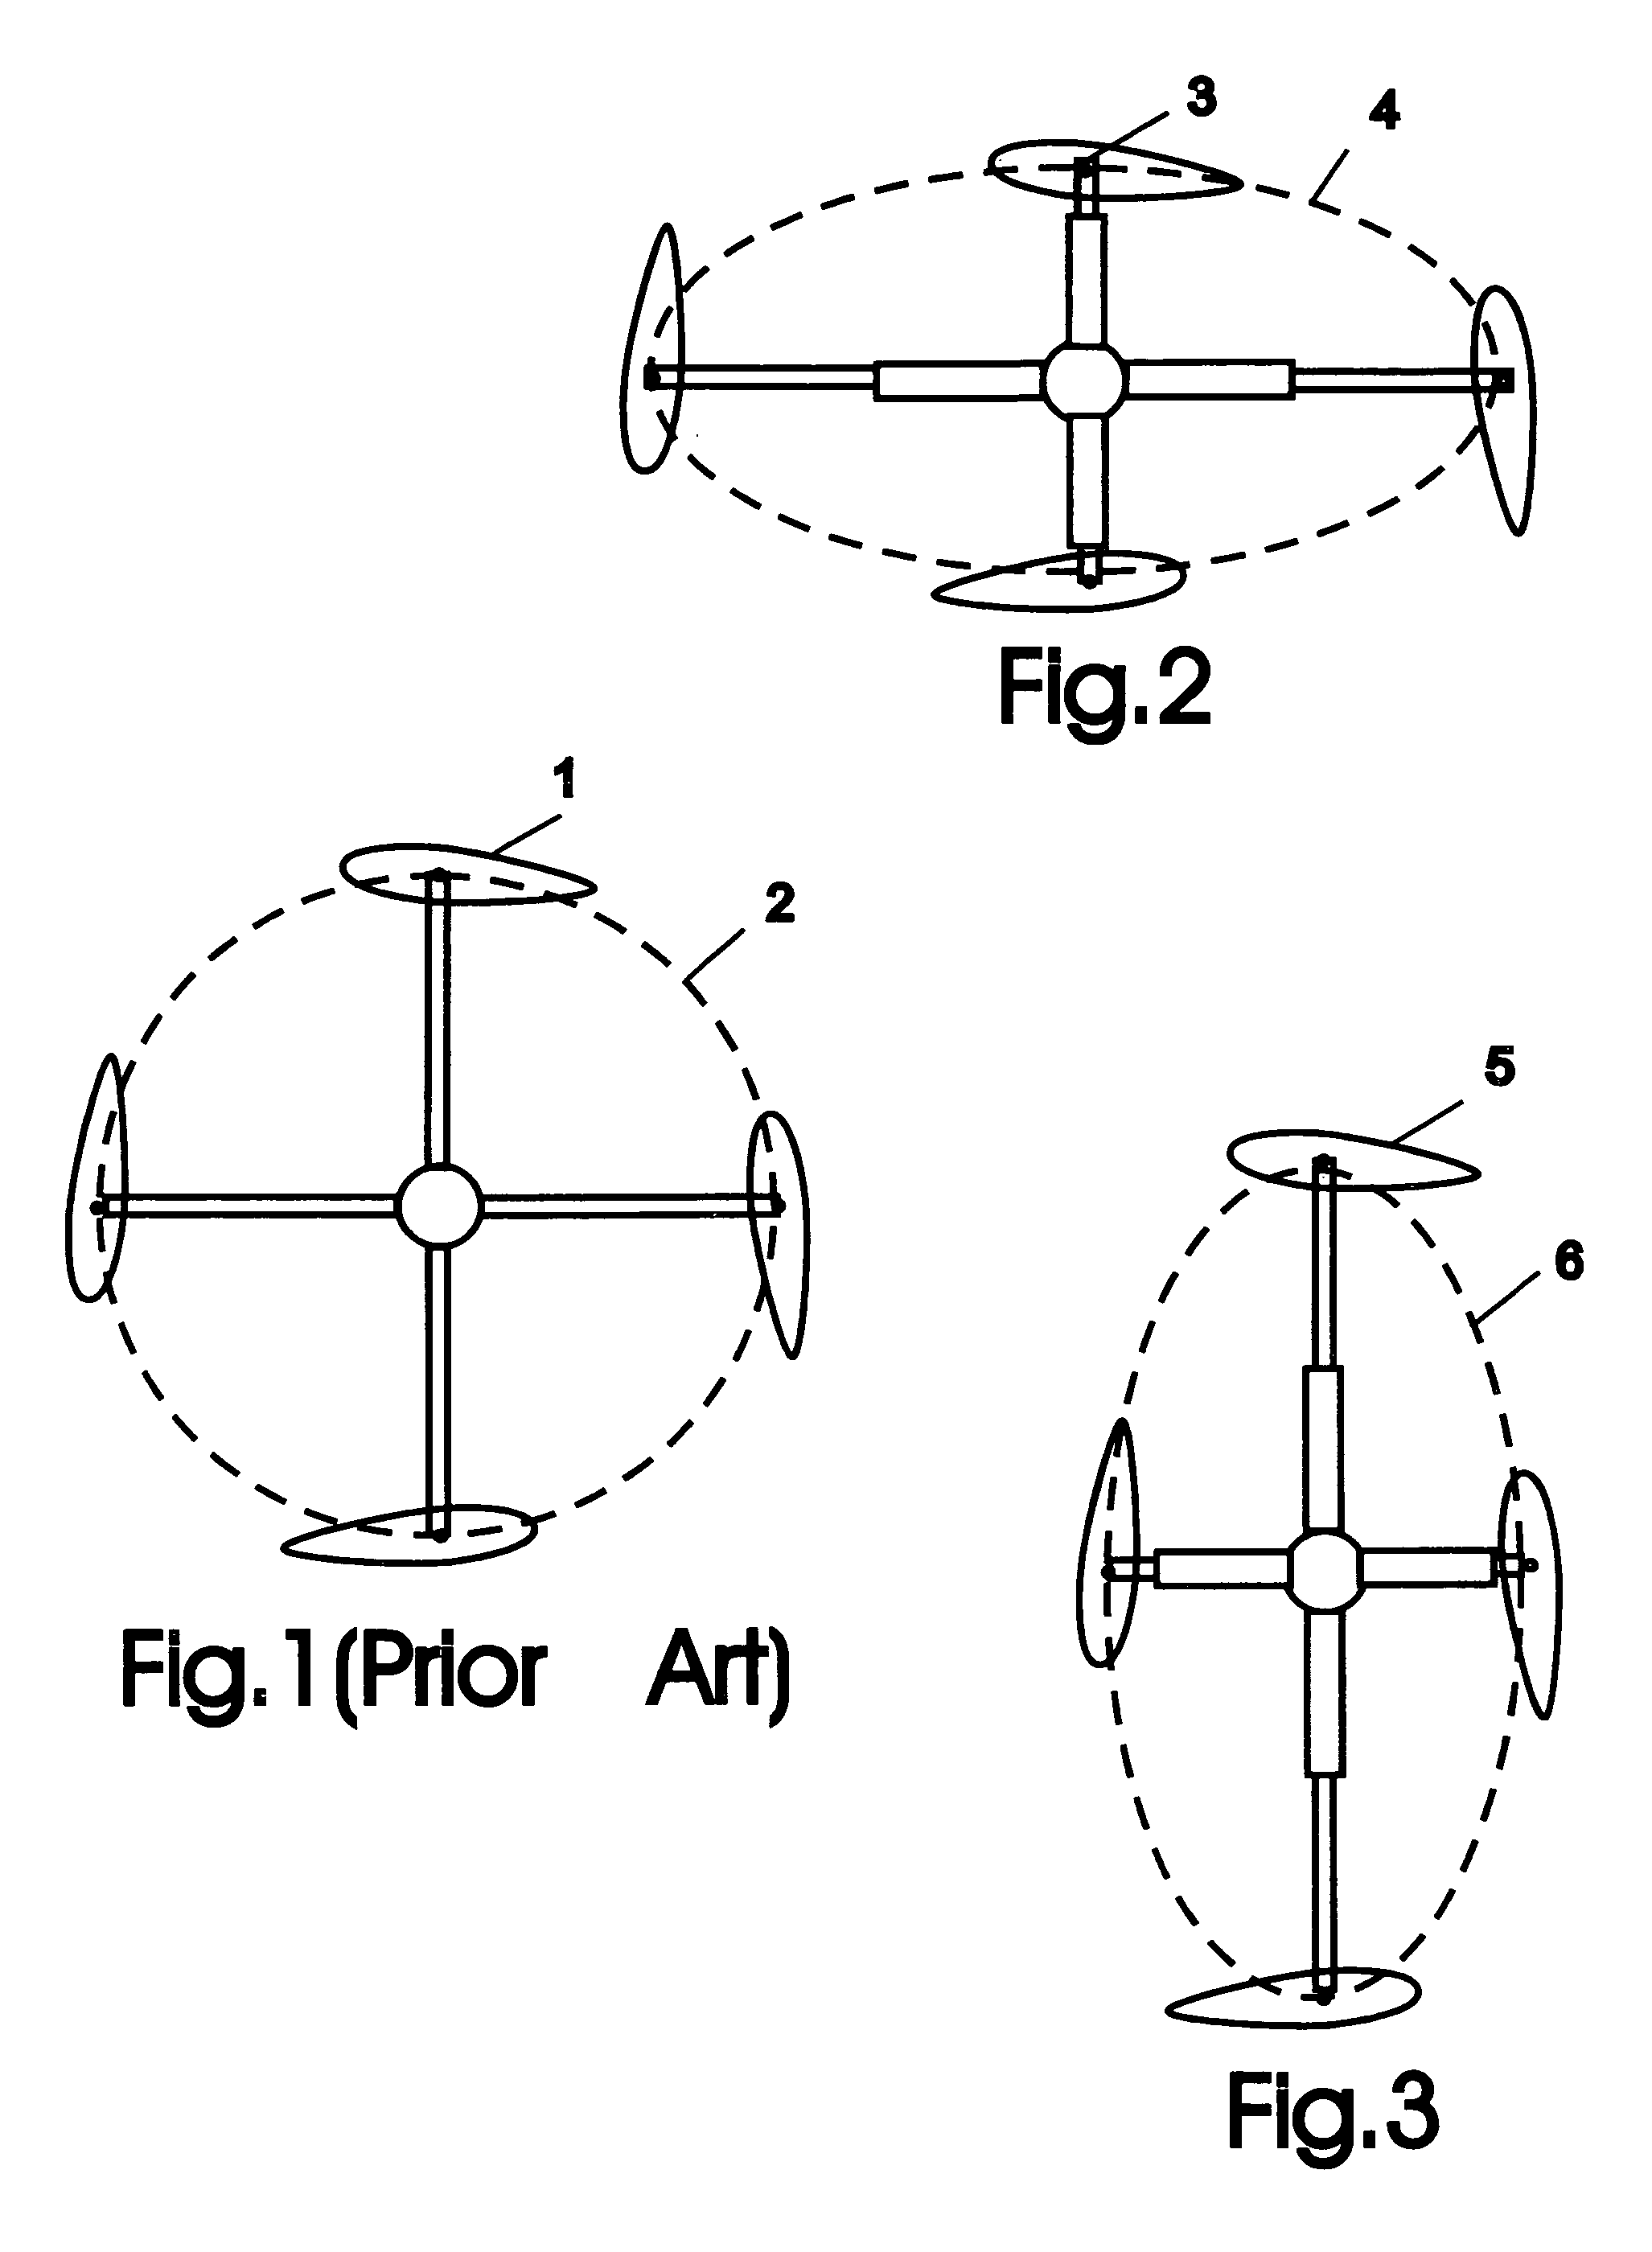 Cycloidal rotor with non-circular blade orbit